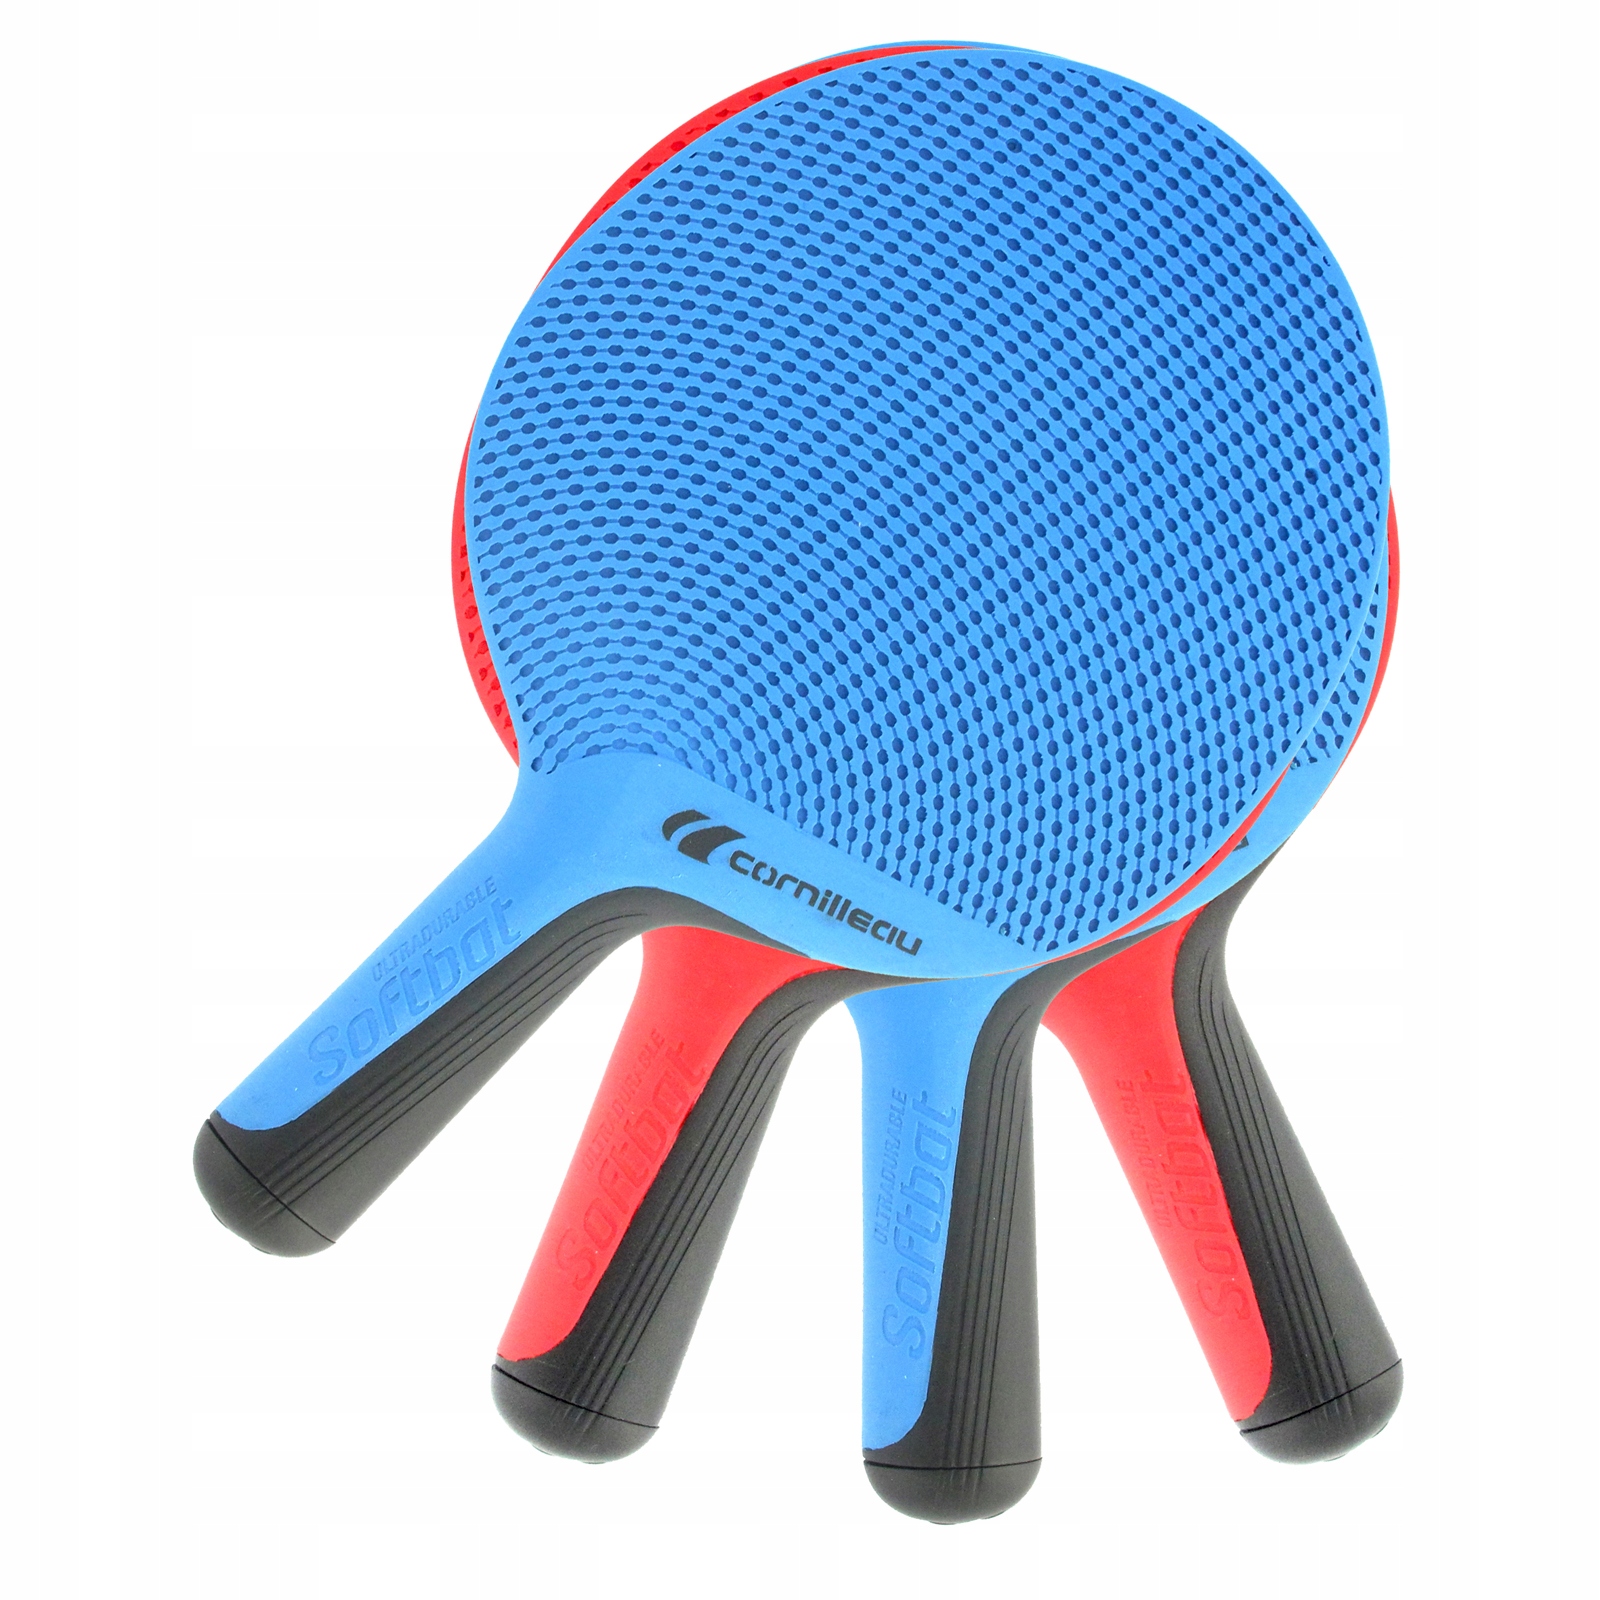 Ракетка для настольного тенниса цена. Теннисная ракетка Cornilleau. Набор ракетки для пинг понга. Racket ракетки для настольного тенниса. Table Tennis Racket набор.